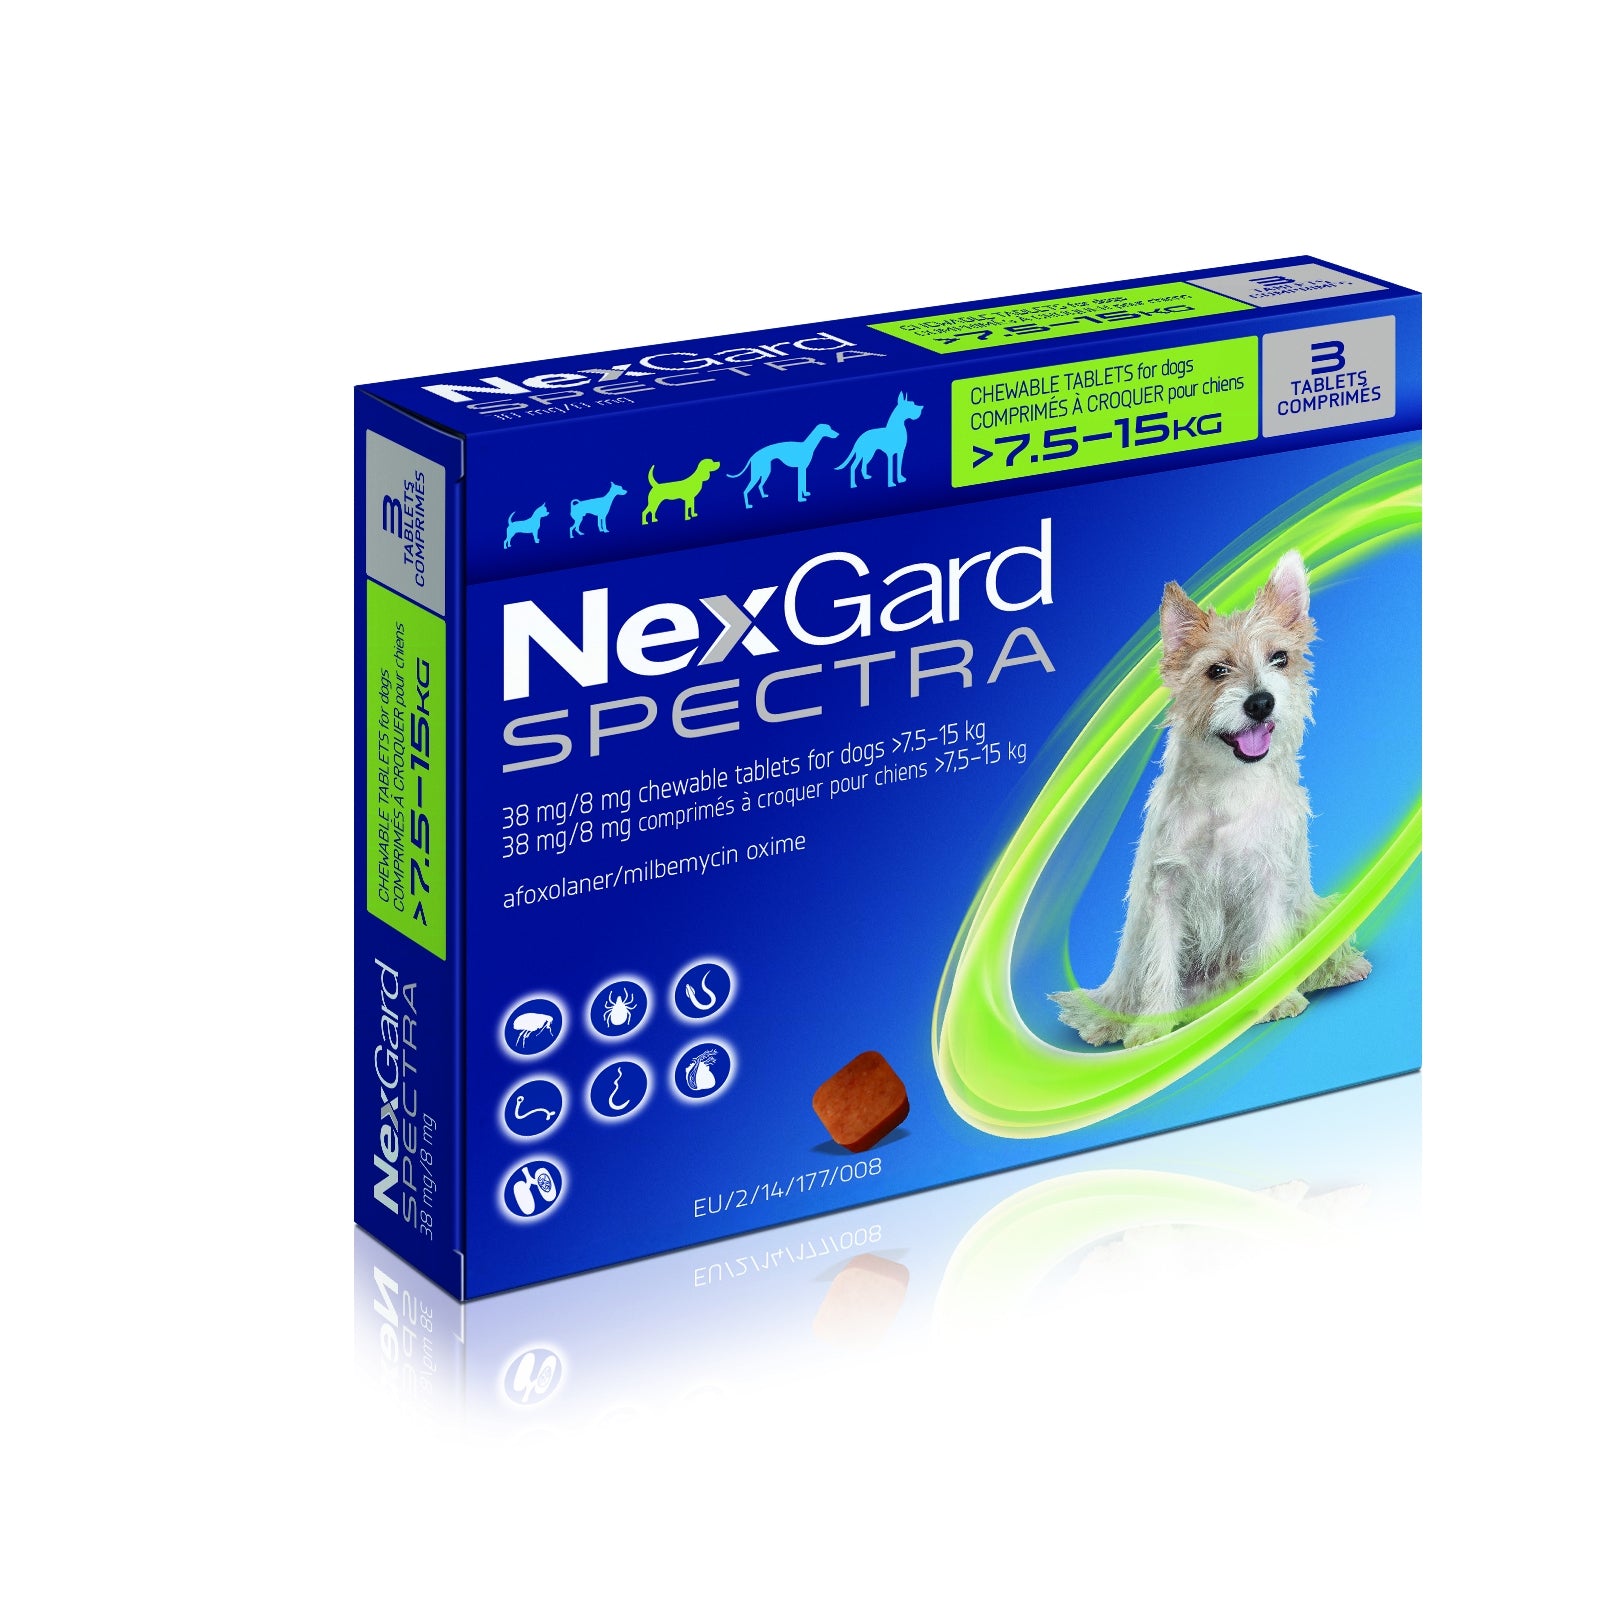 Нексгард спектра отзывы. NEXGARD Spectra для собак 3 компонентная 1 большая и 2 маленькие. NEXGARD Spectra в руках.